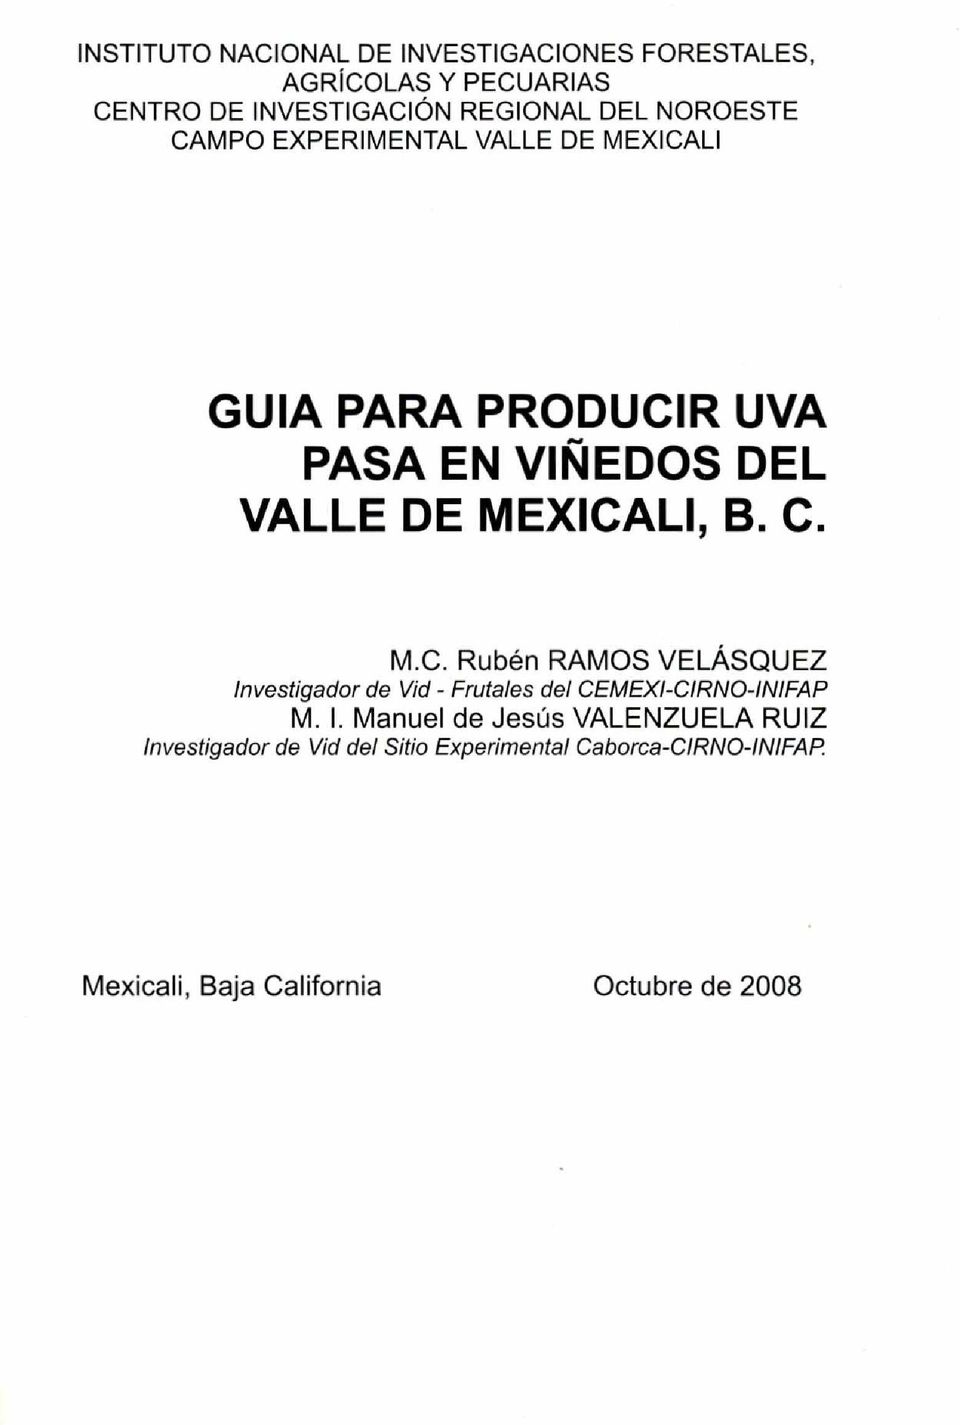 I. Manuel de Jesús VALENZUELA RUIZ Investigador de Vid del Sitio Experimental Caborca-CIRNO-INIFAP.